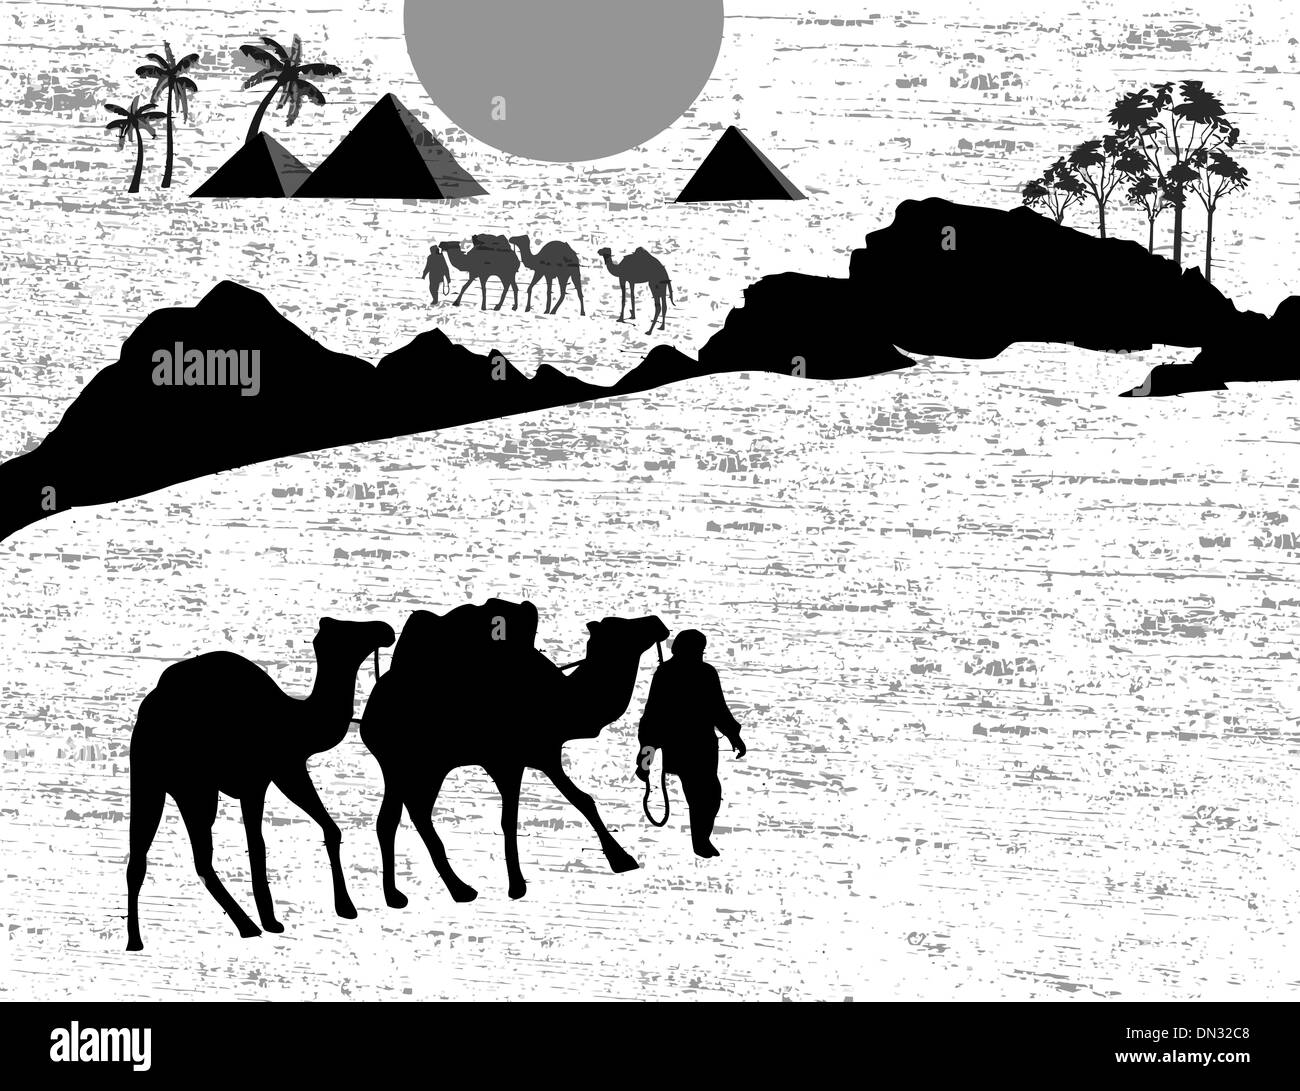 Bedouin camel caravan Stock Vector